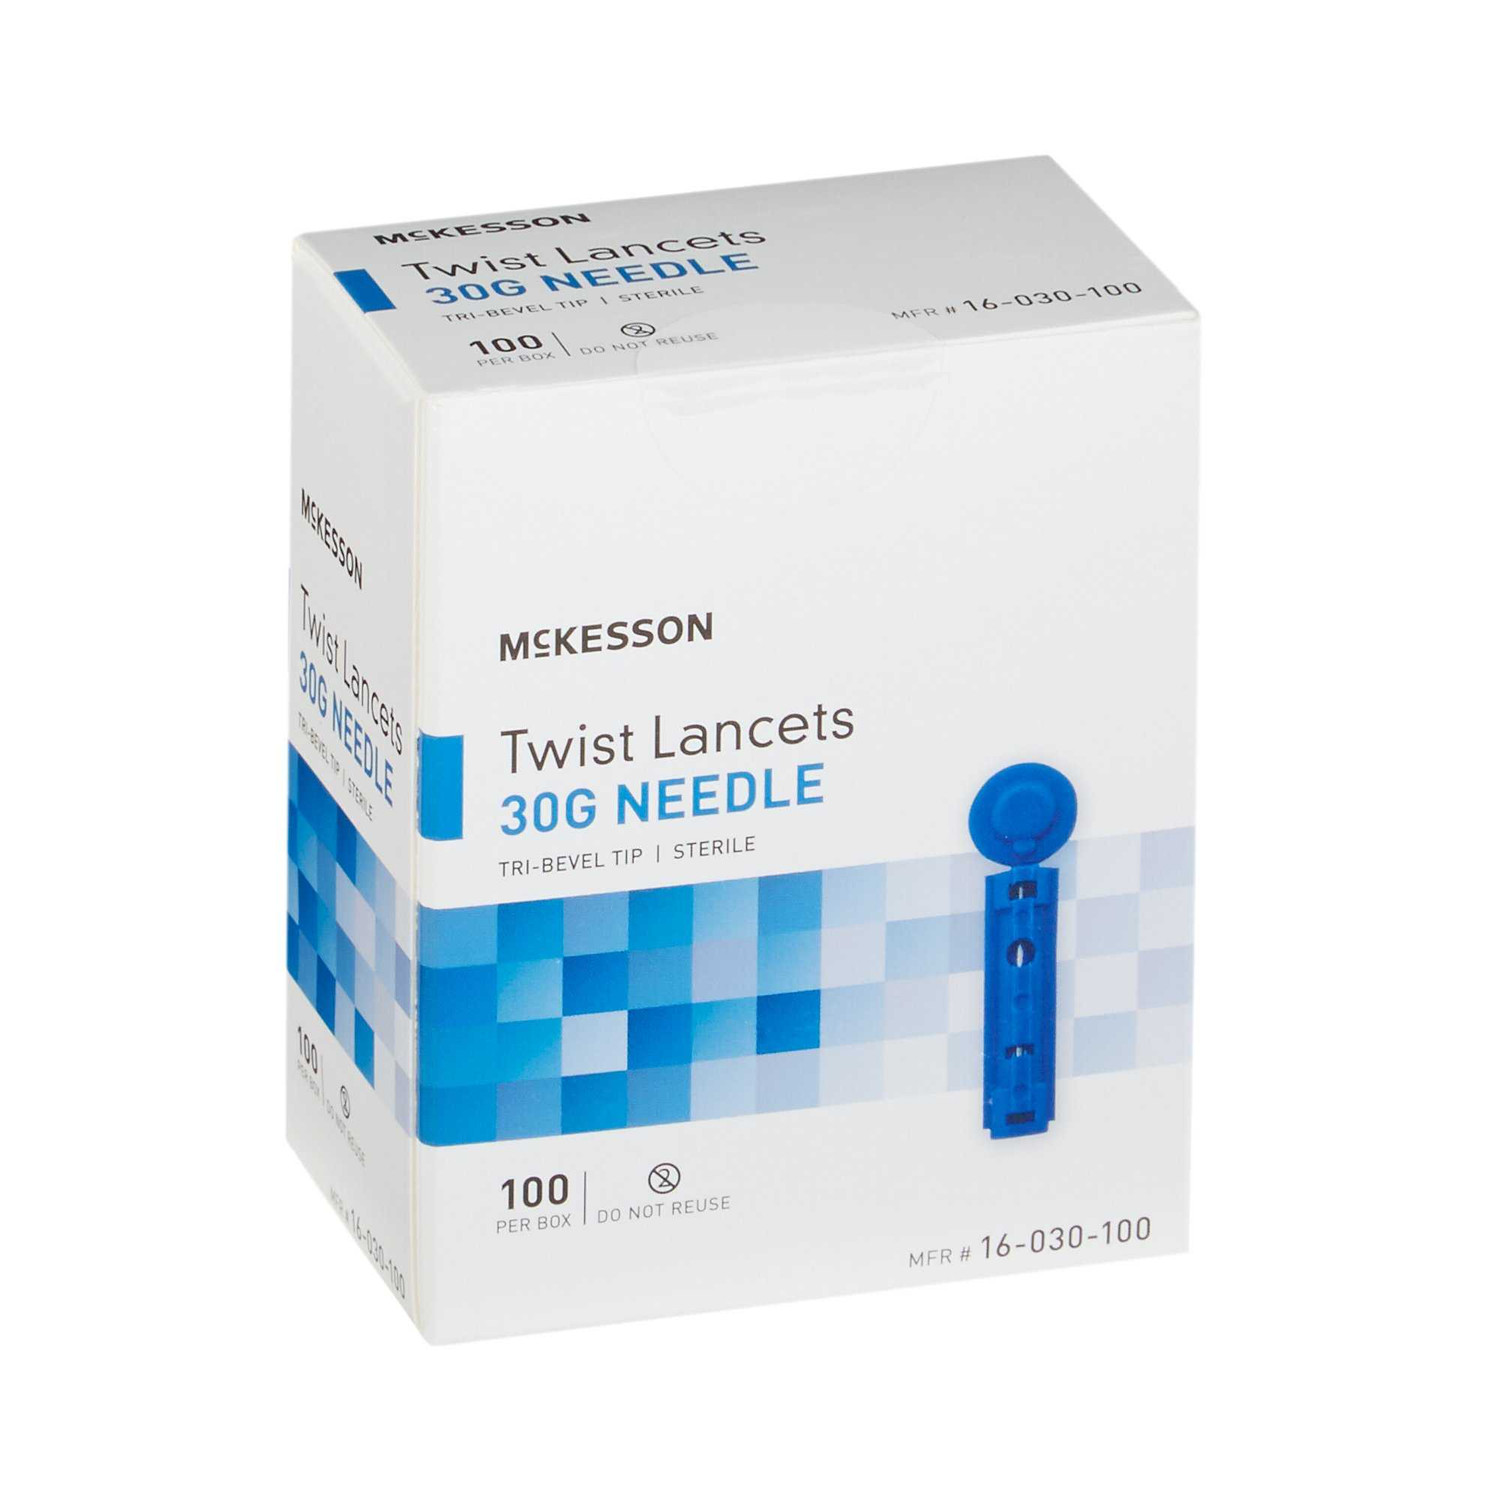 https://cdn11.bigcommerce.com/s-1l9d1d1d79/images/stencil/1500x1500/products/101033/243594/Lancet-McKesson-Twist-Top-Lancet-Needle-18-mm-Depth-30-Gauge-Twist-Top-16-030-100-Case5000-16-030-100-MCK-BRAND-730272CS_212365__35358.1682434174.jpg?c=2&imbypass=on